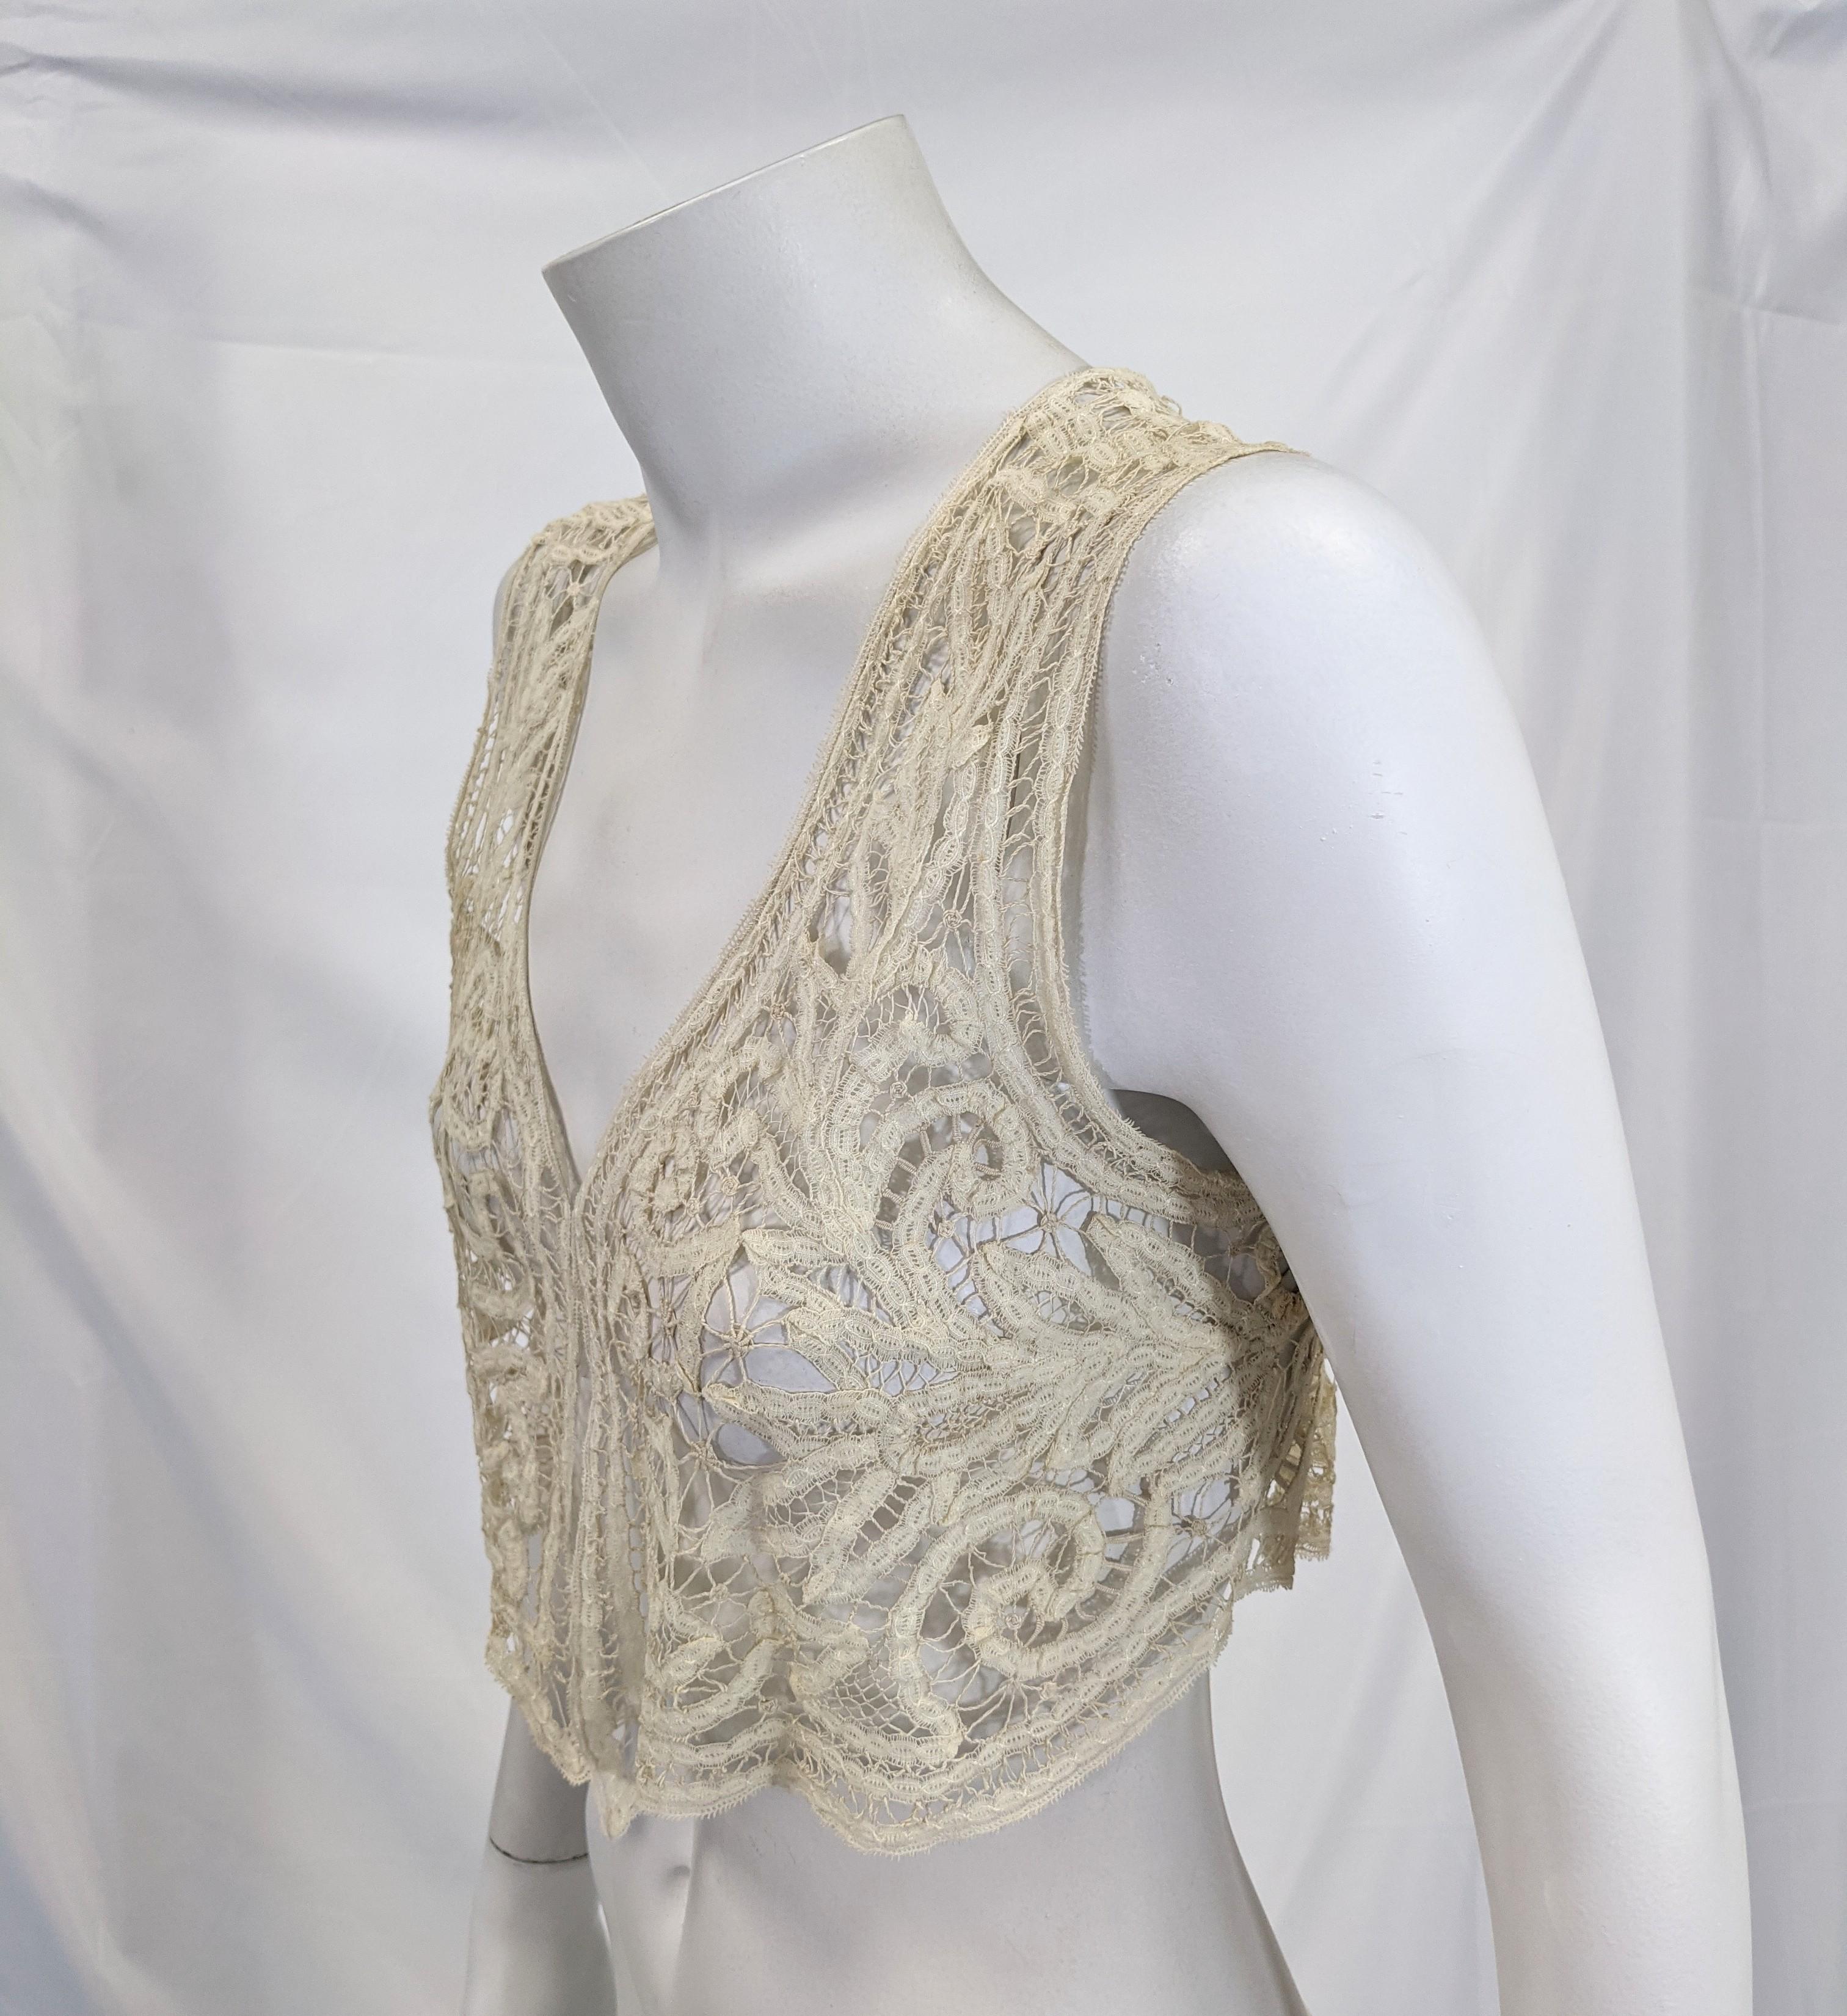 Lace Vests - 15 For Sale on 1stDibs | vintage lace vest, black vest with  lace trim, lace up vest top